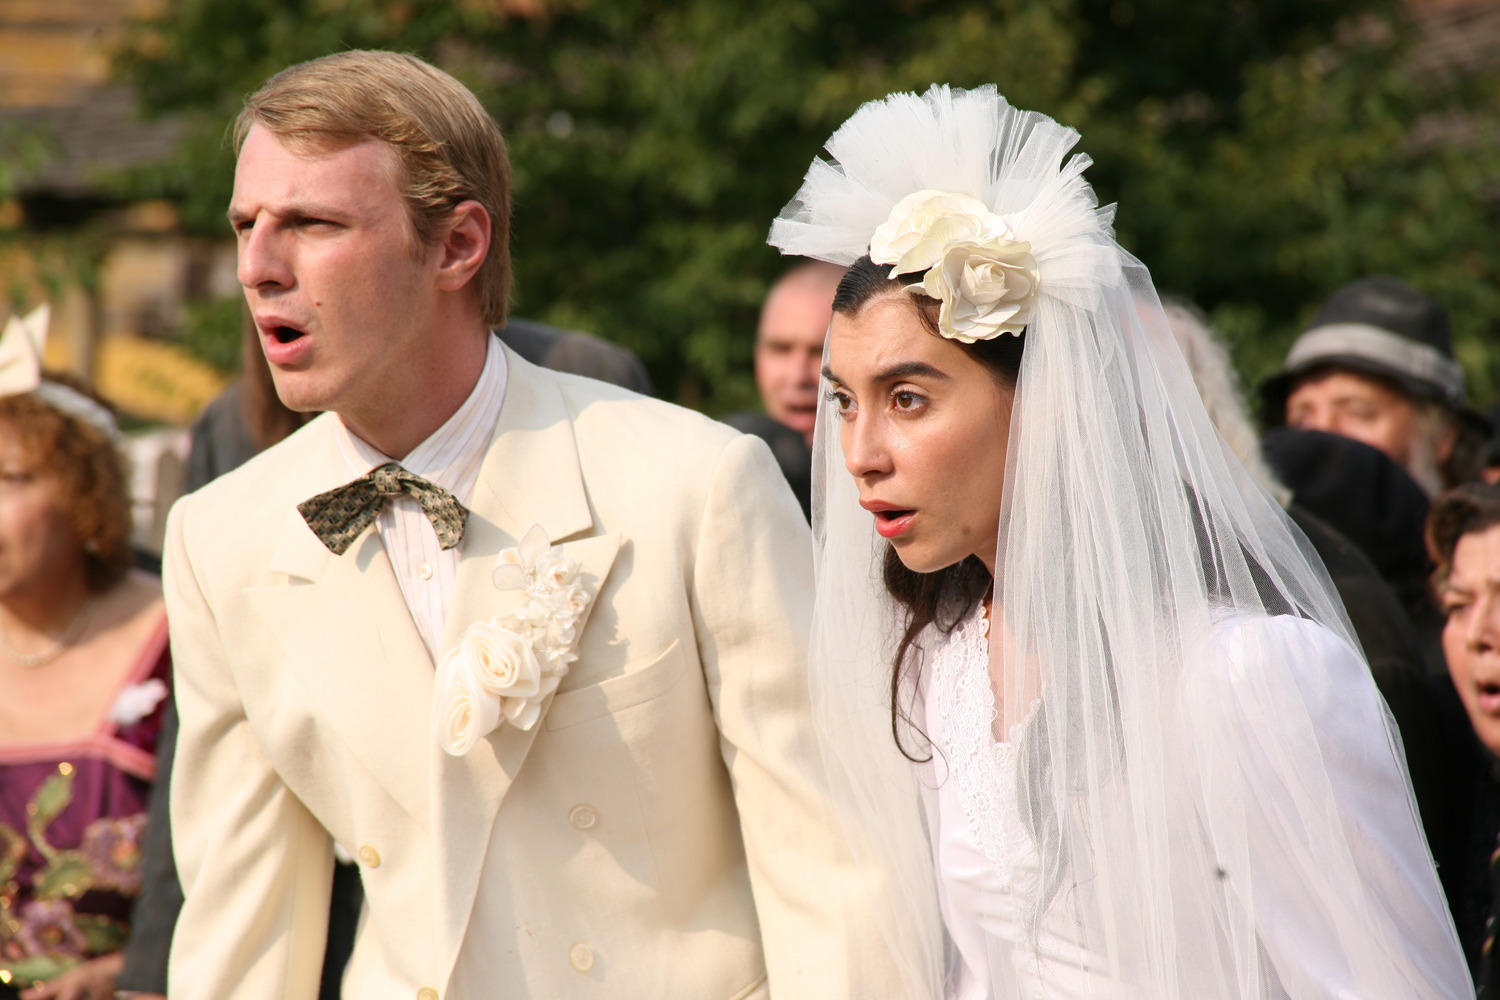 S-au inspirat din filmul românesc „Nunta mută”? Este interzis râsul la căsătorii, într-o regiune din Rusia (VIDEO)